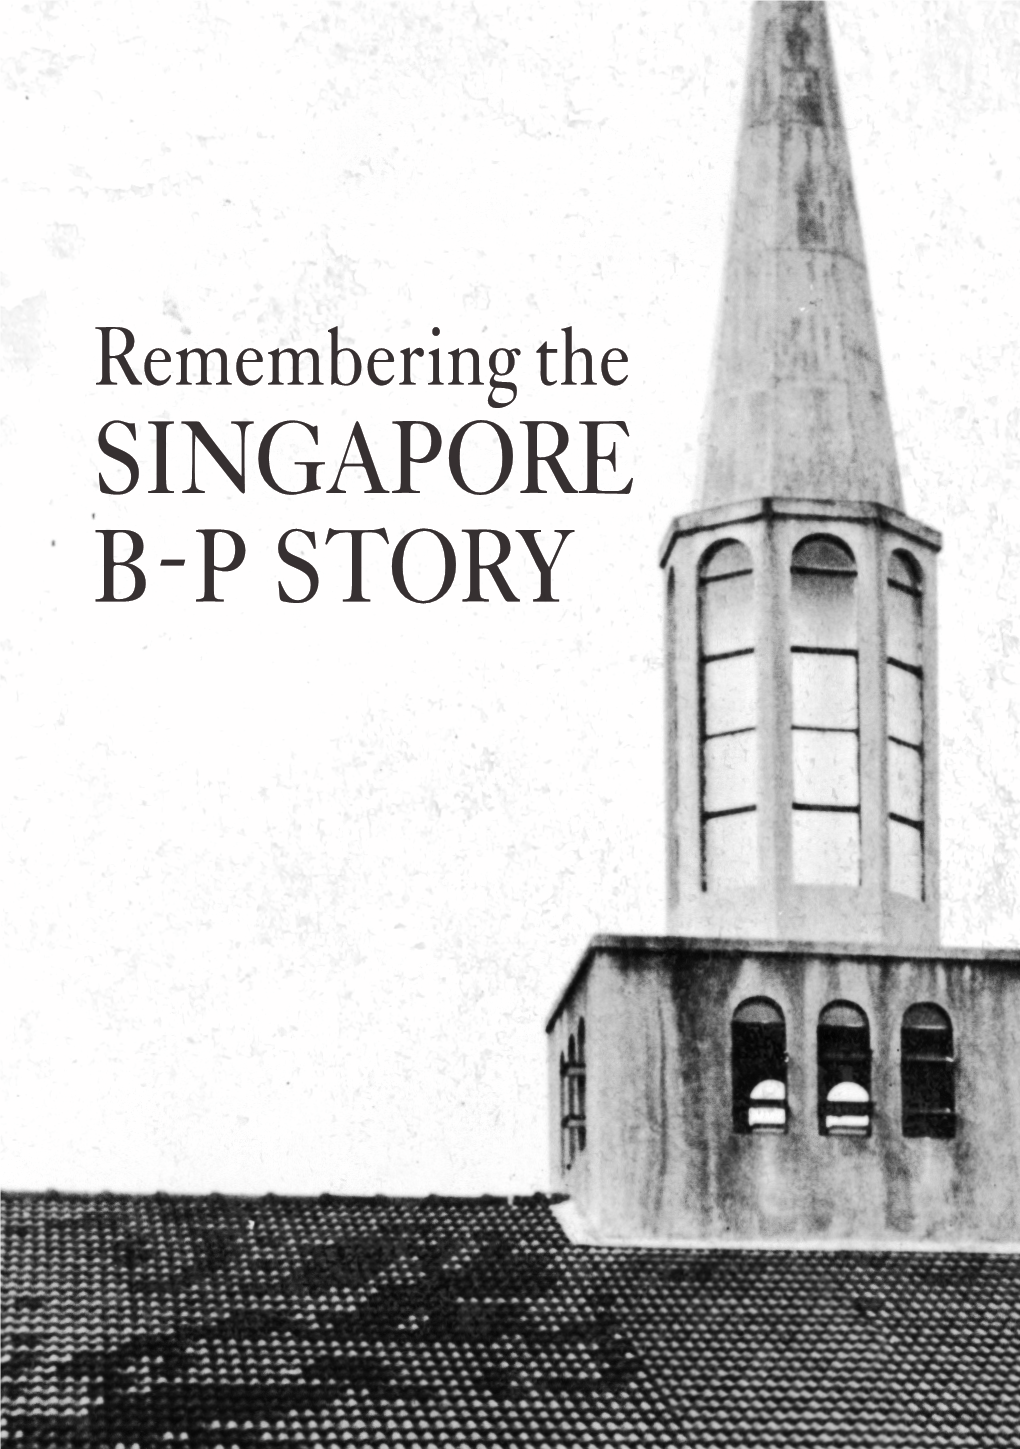 Singapore B-P Story